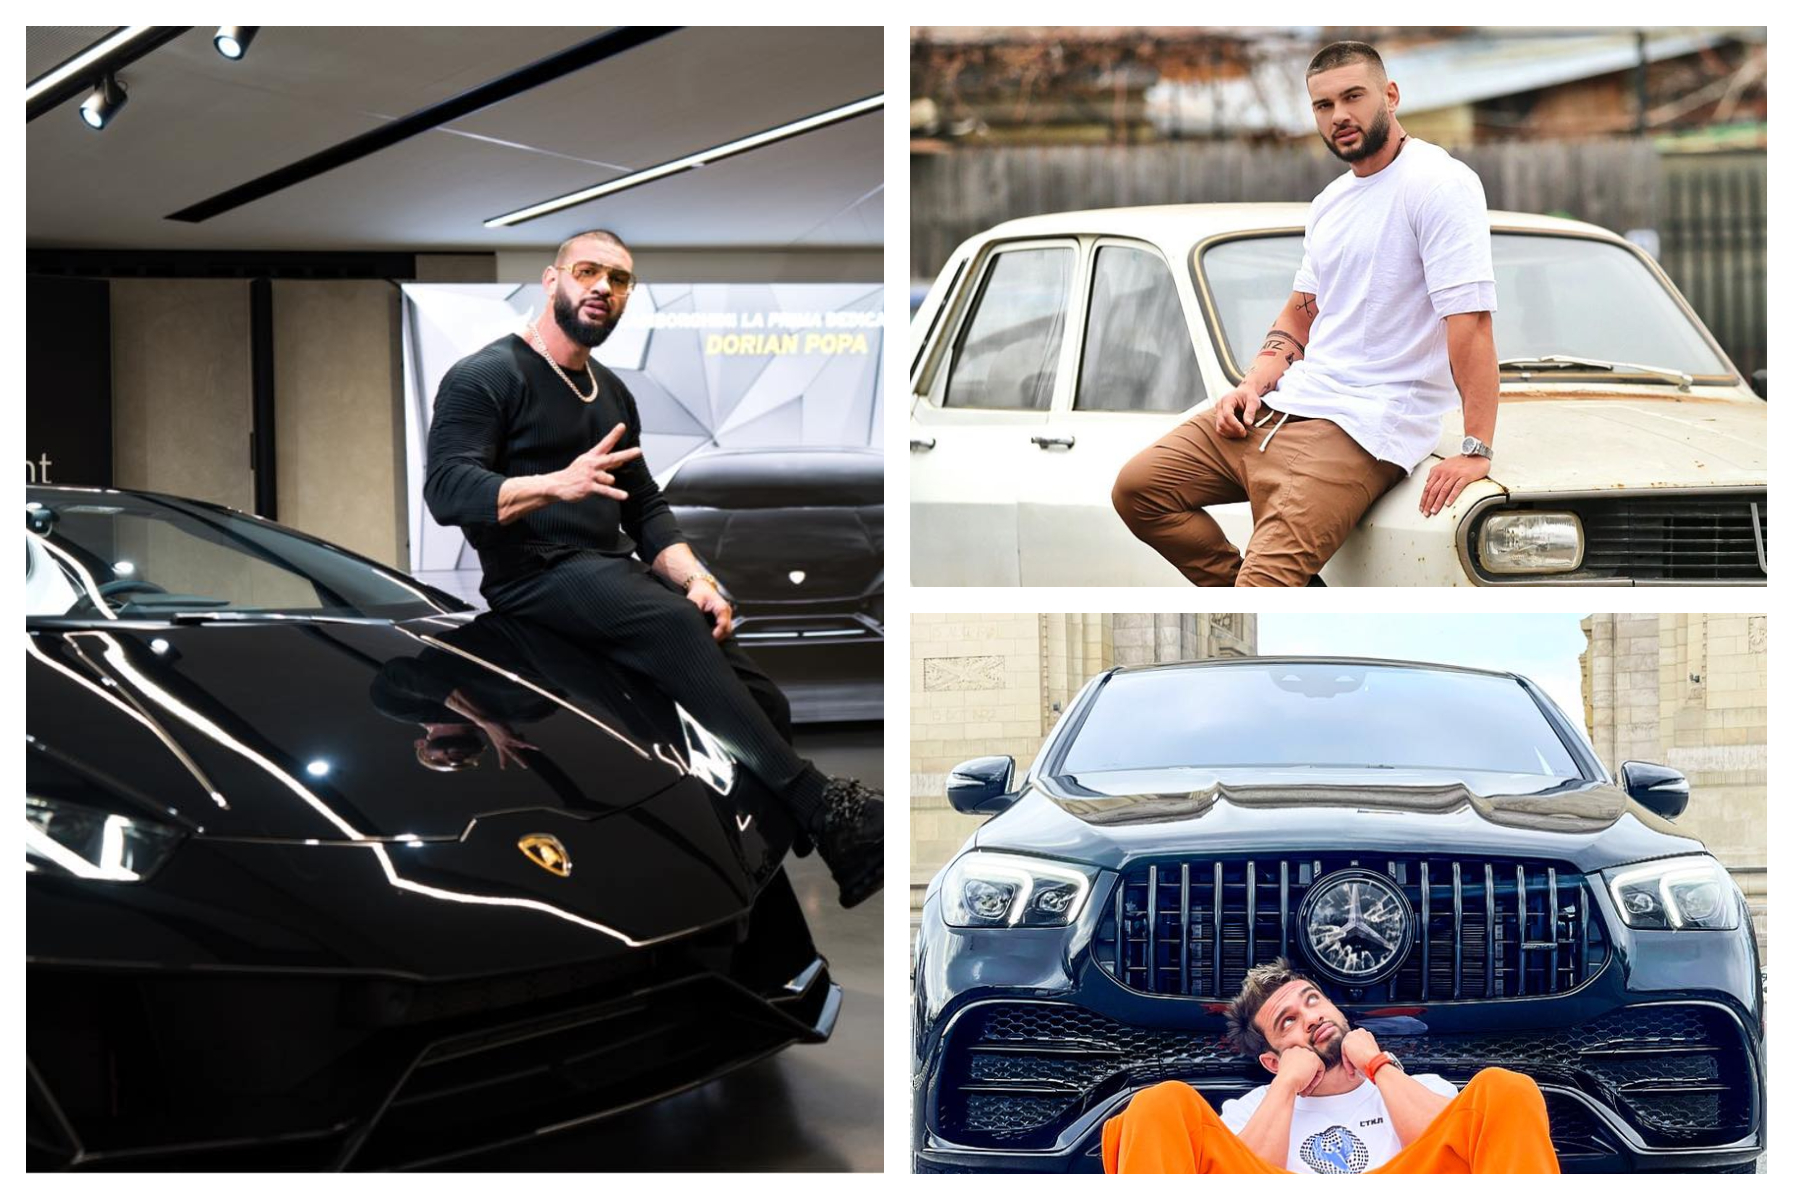 Cum arată colecția de mașini a lui Dorian Popa evaluată la 550.000 euro /VIDEO! A dat primele autografe într-un Matiz iar acum are Lamborghini!